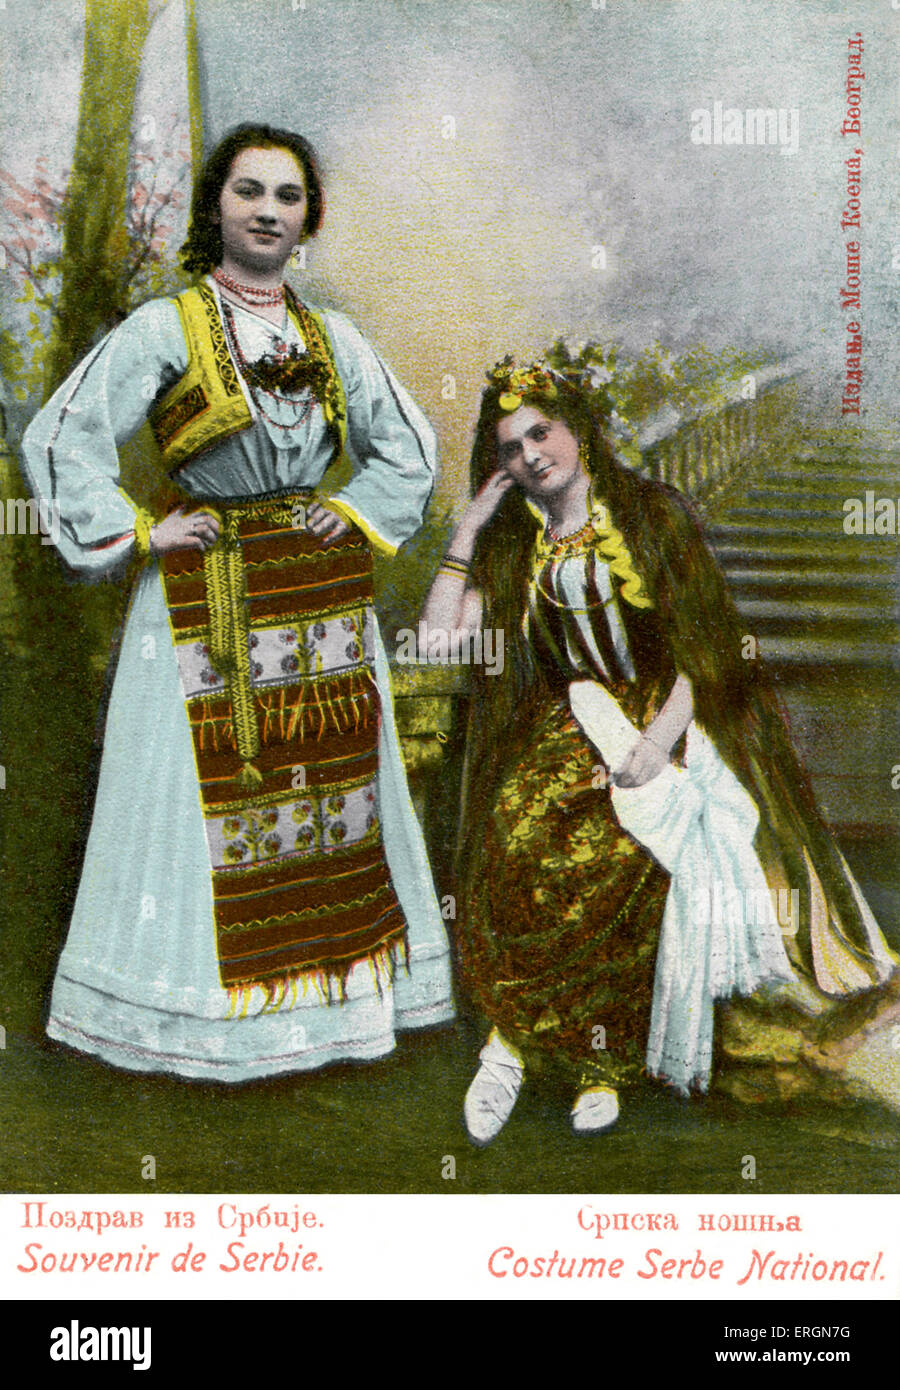 Donne serbe nazionale in costume tradizionale. La didascalia recita: Souvenir de Serbie; costume nazionale serba". Foto Stock